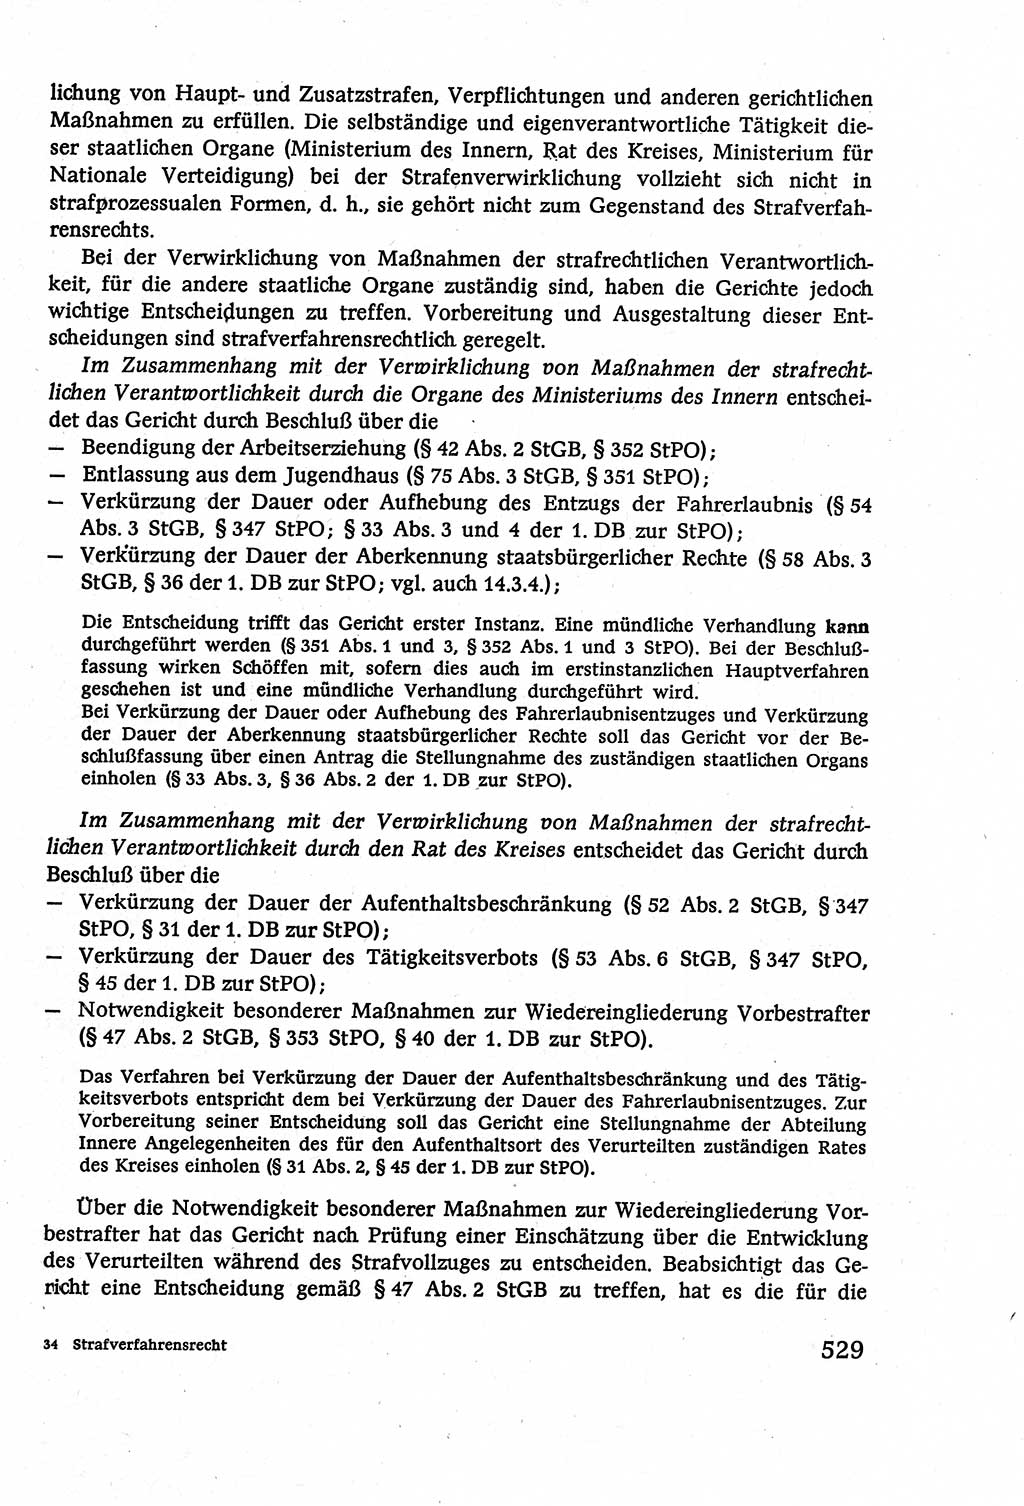 Strafverfahrensrecht [Deutsche Demokratische Republik (DDR)], Lehrbuch 1977, Seite 529 (Strafverf.-R. DDR Lb. 1977, S. 529)